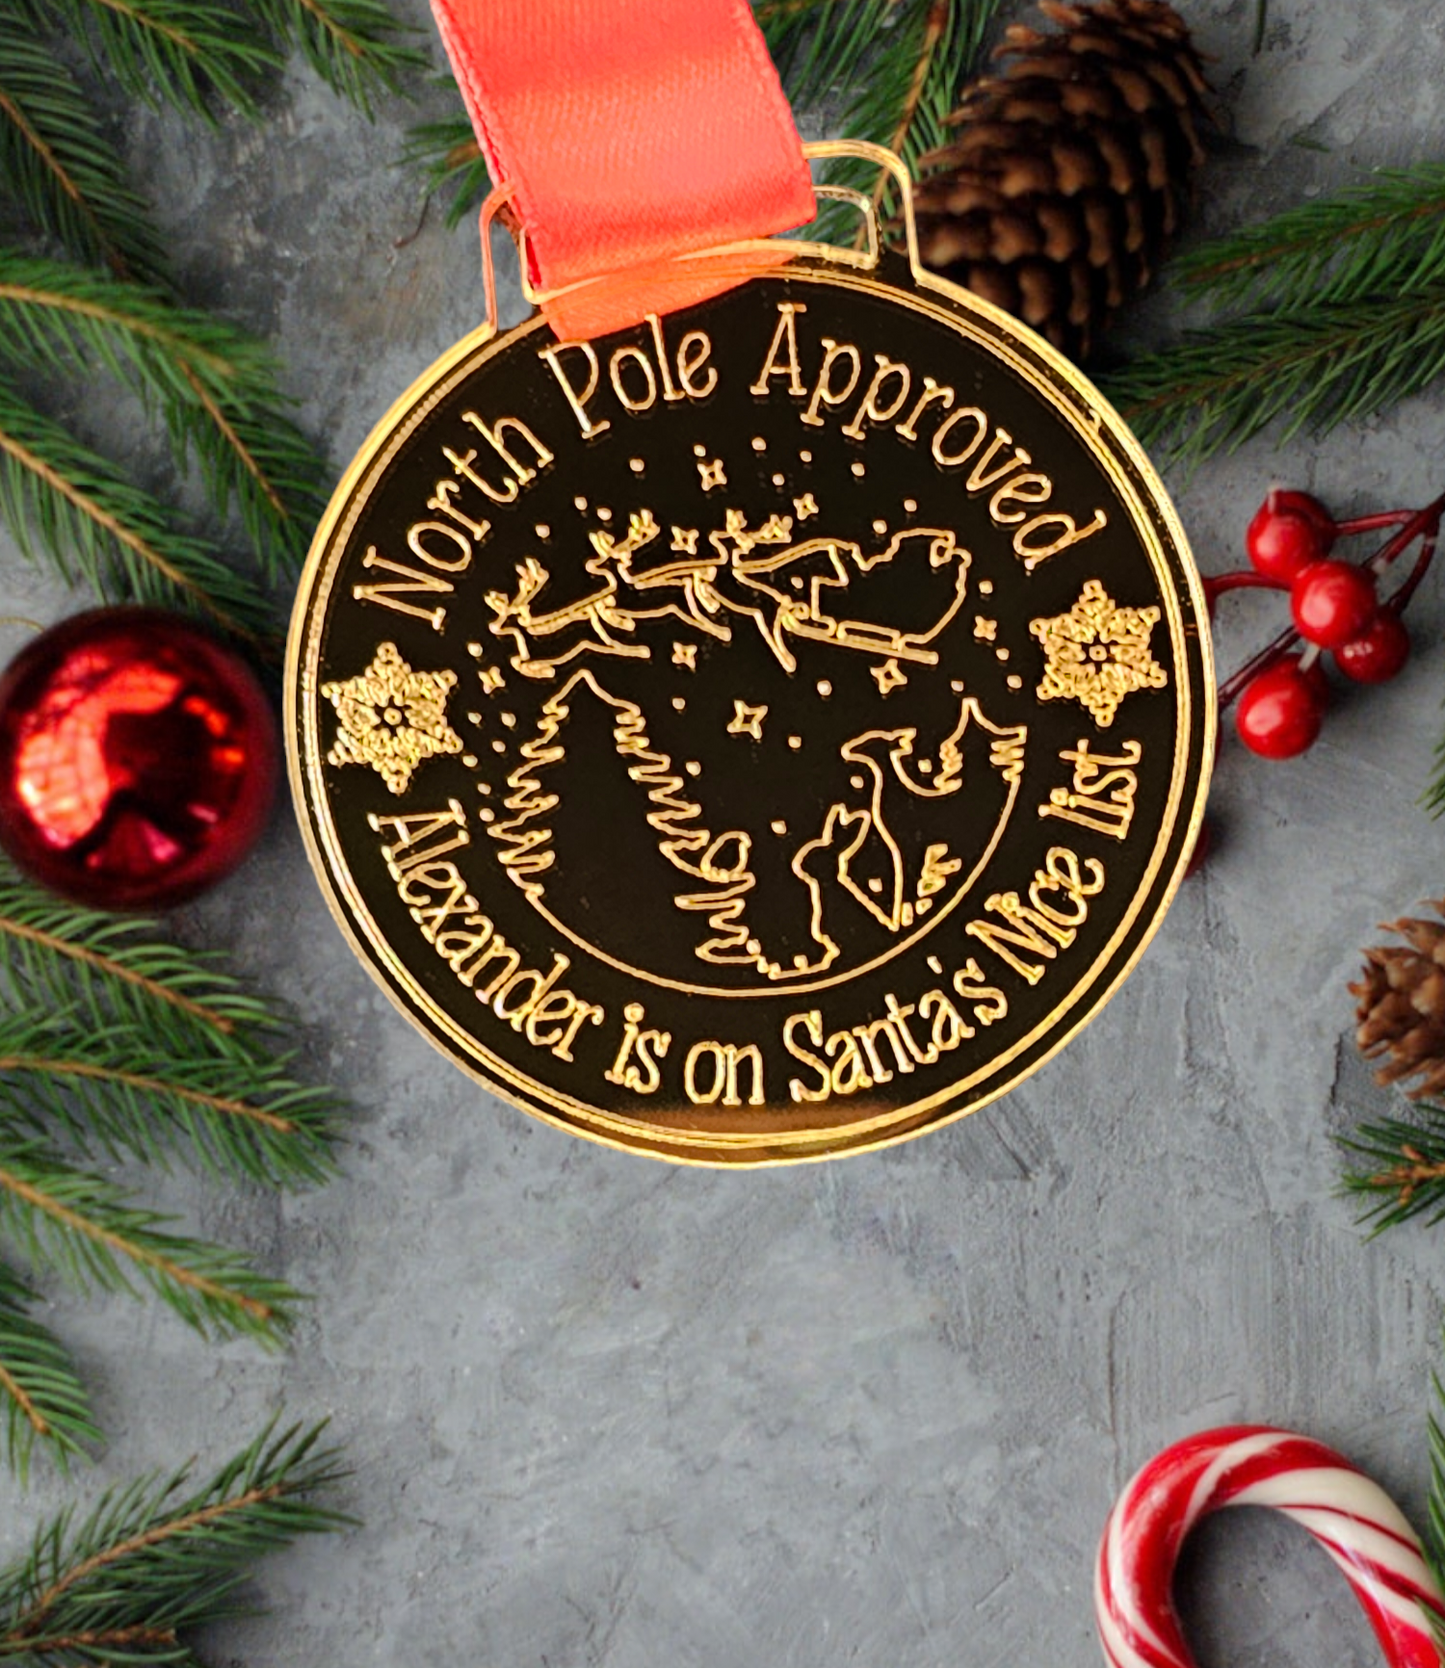 Personalised Santa's nice list medal